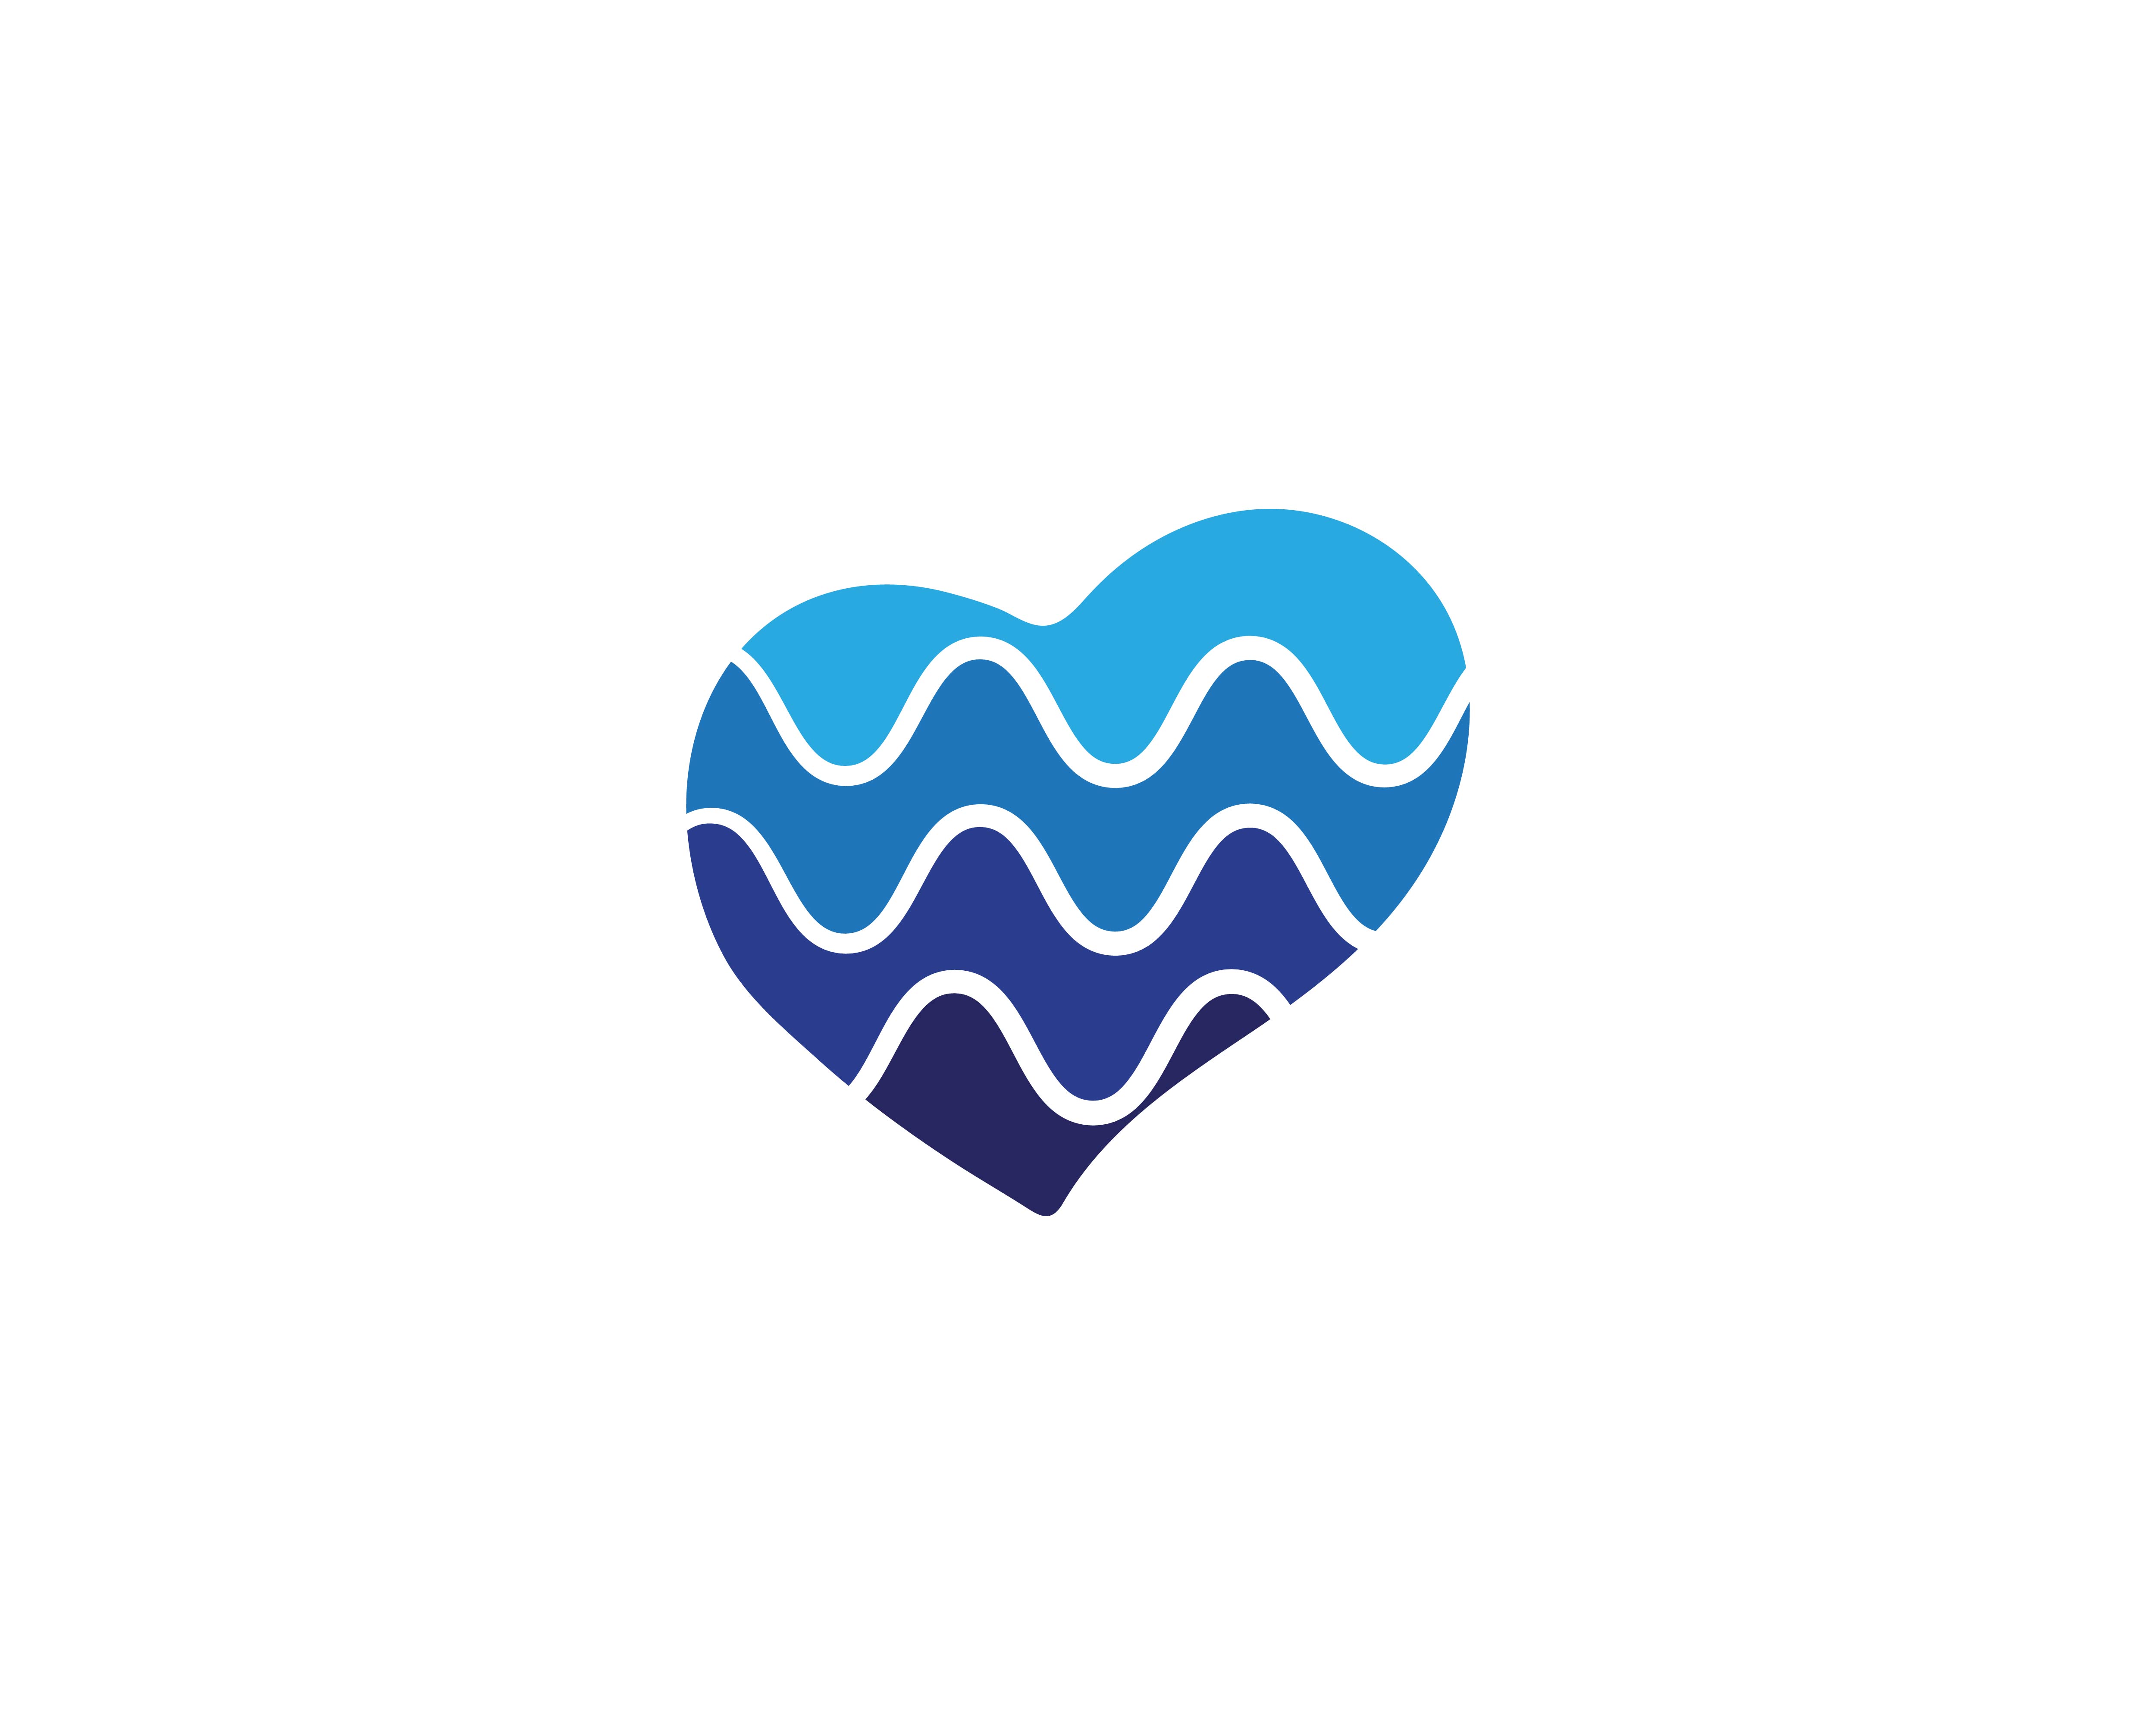 Download Love heart symbol logo templates 597461 - Download Free Vectors, Clipart Graphics & Vector Art